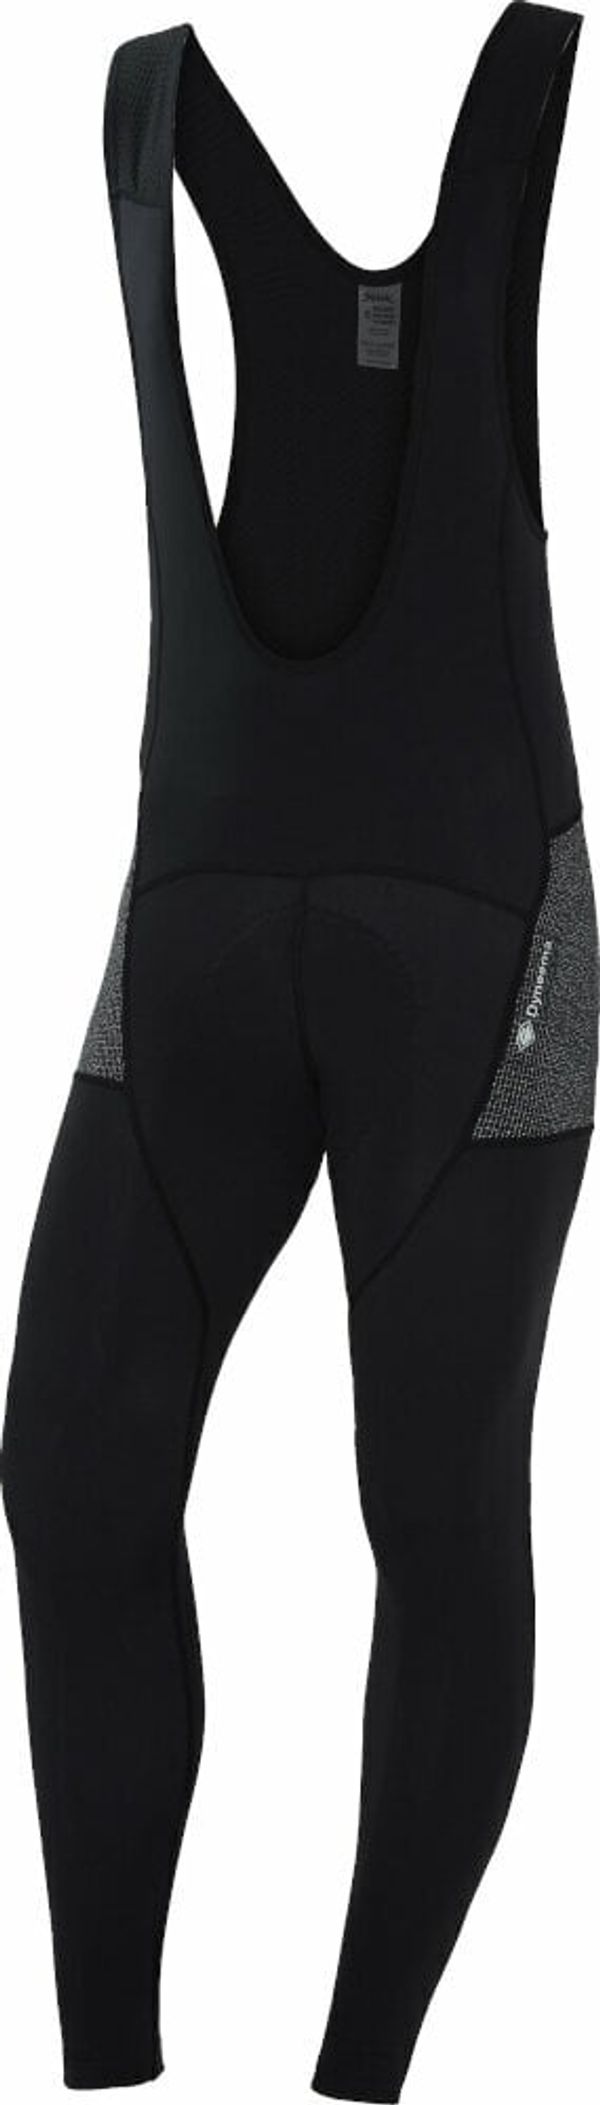 Spiuk Spiuk Top Ten Antiabrasion Bib Pants Black 3XL Kolesarske hlače